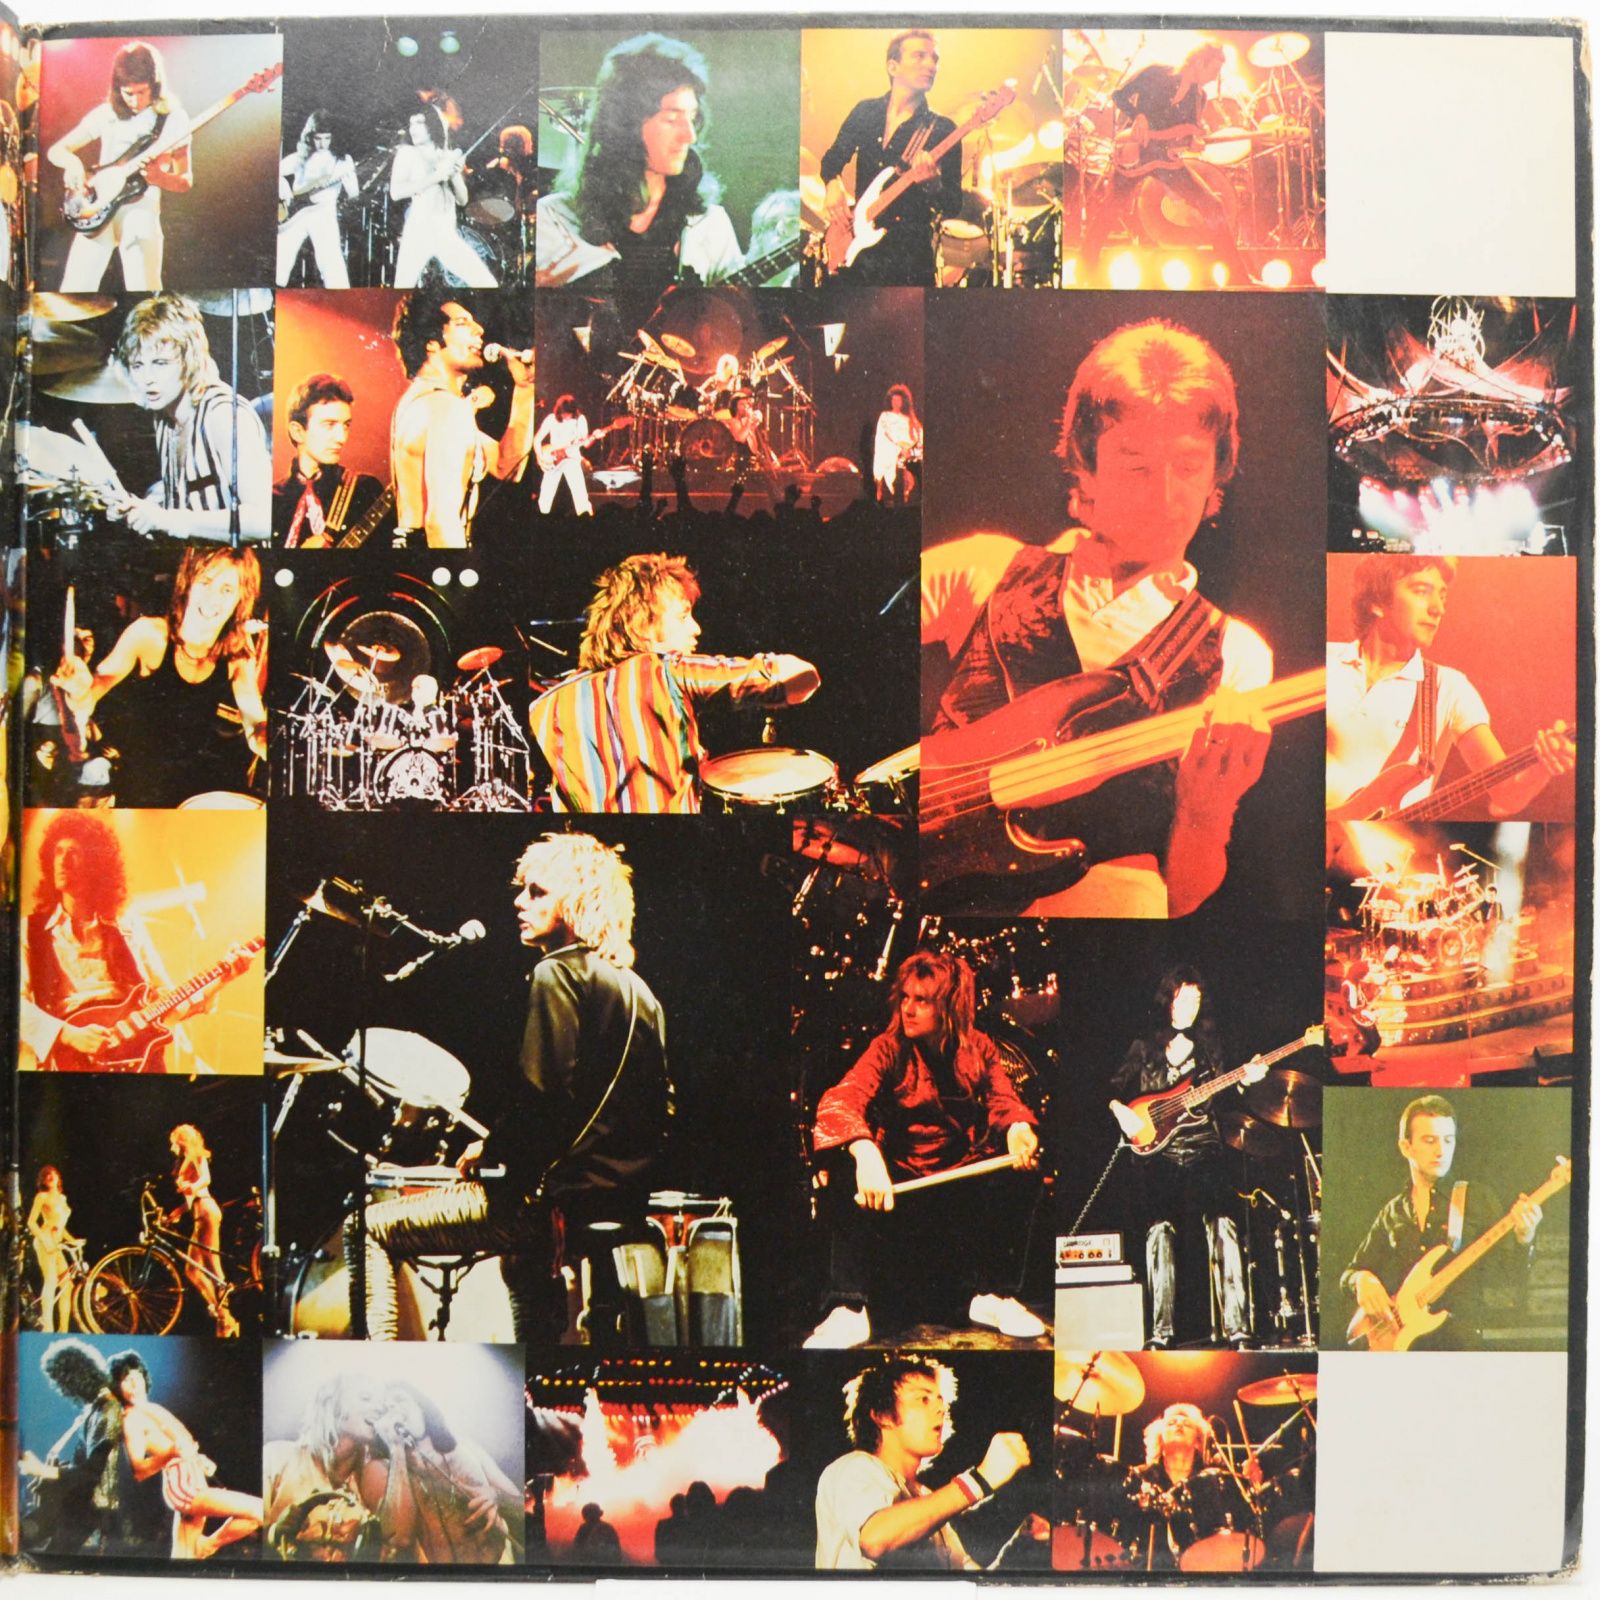 Queen — Live Killers (2LP), 1979